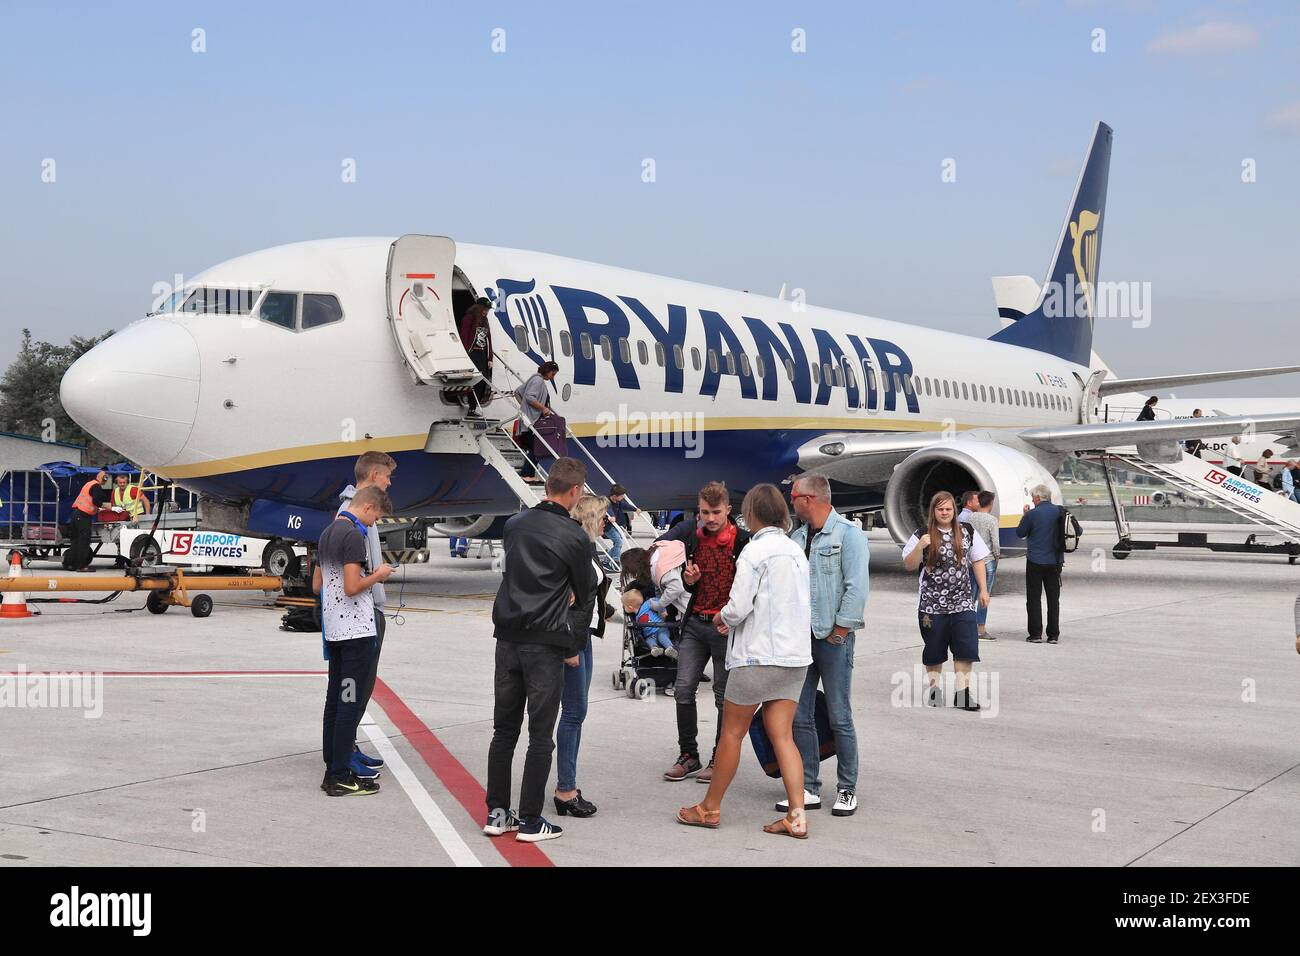 CRACOVIA, POLONIA - 28 AGOSTO 2018: I passeggeri sbarcano sul Boeing 737 della compagnia aerea low cost Ryanair all'aeroporto di Cracovia in Polonia. È il secondo ai più affollato Foto Stock